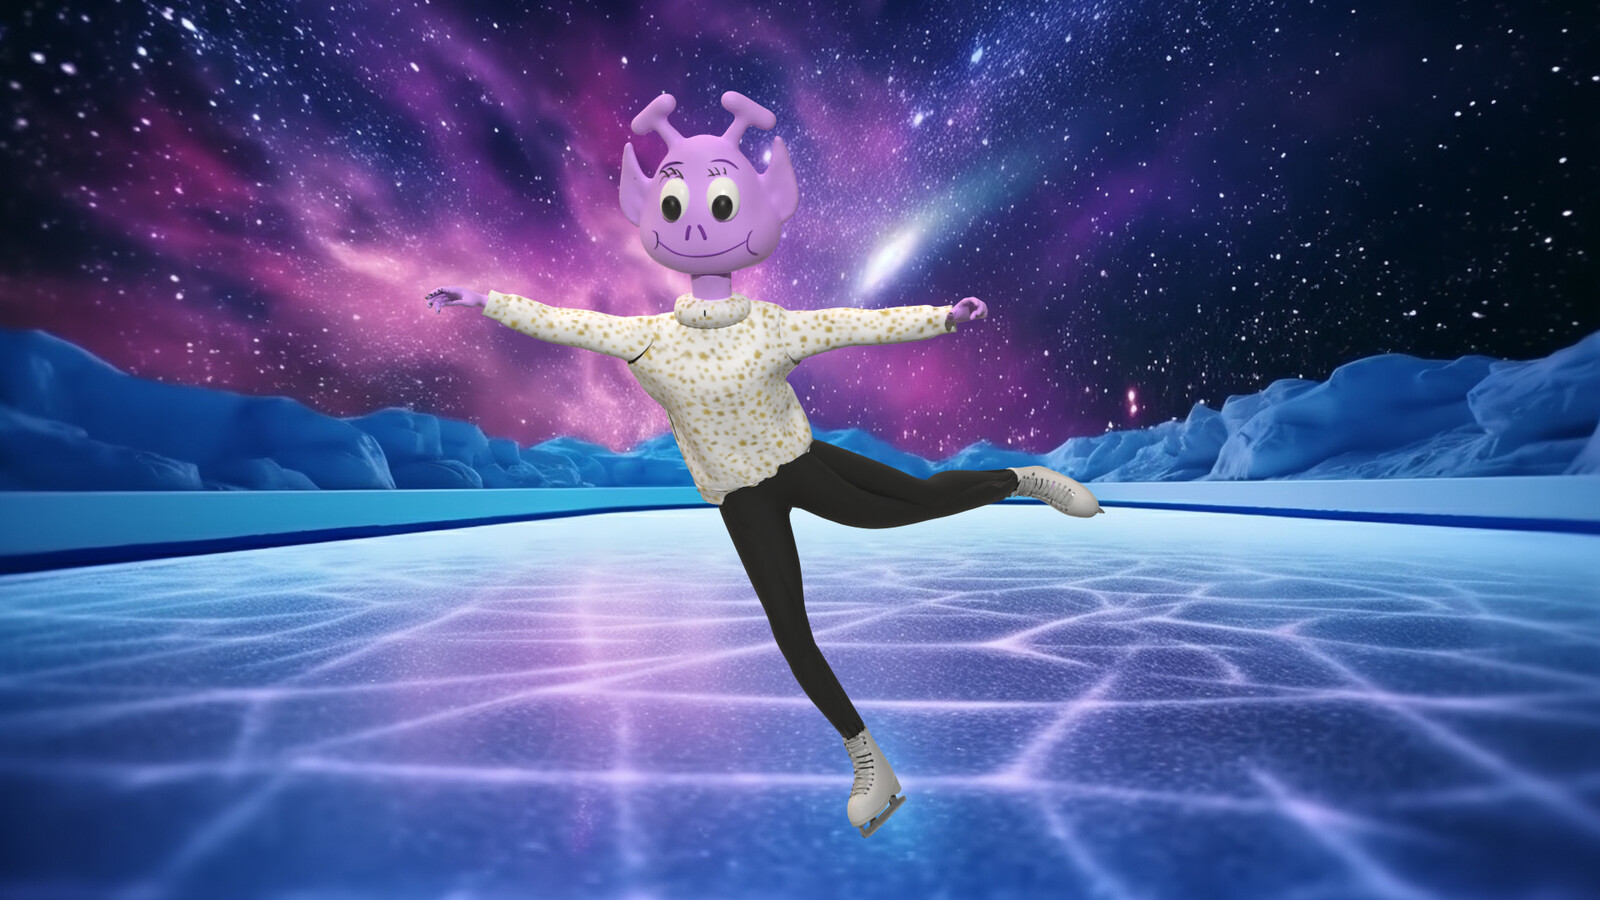 Penny Alien Ice Skater